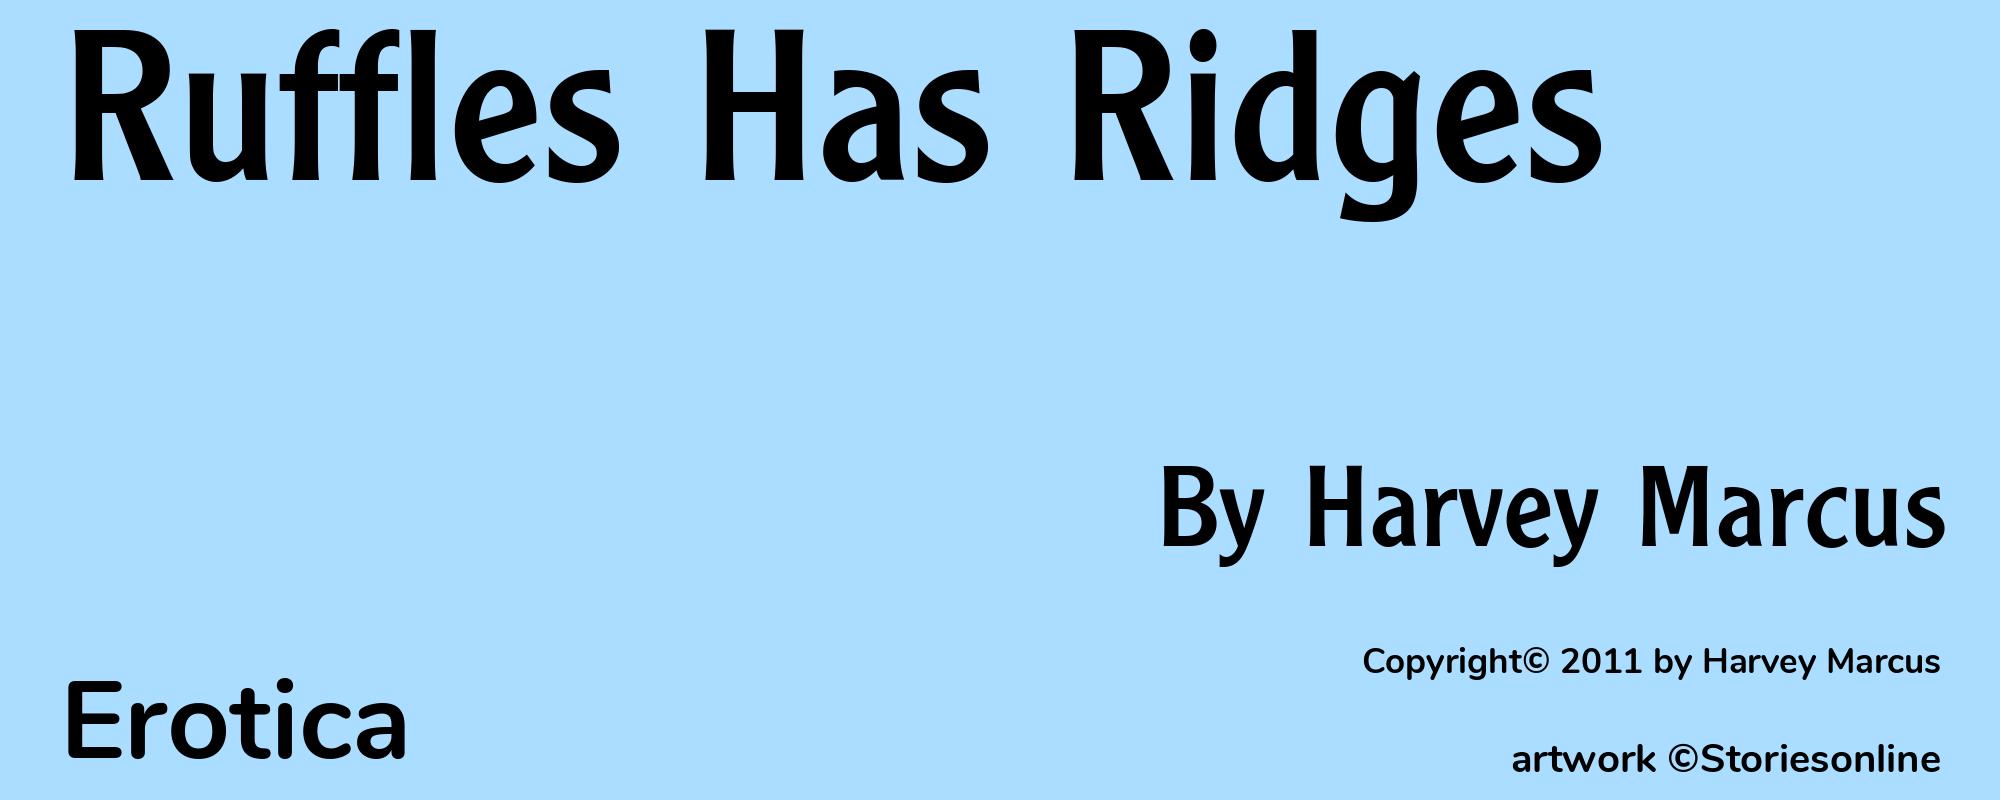 Ruffles Has Ridges - Cover